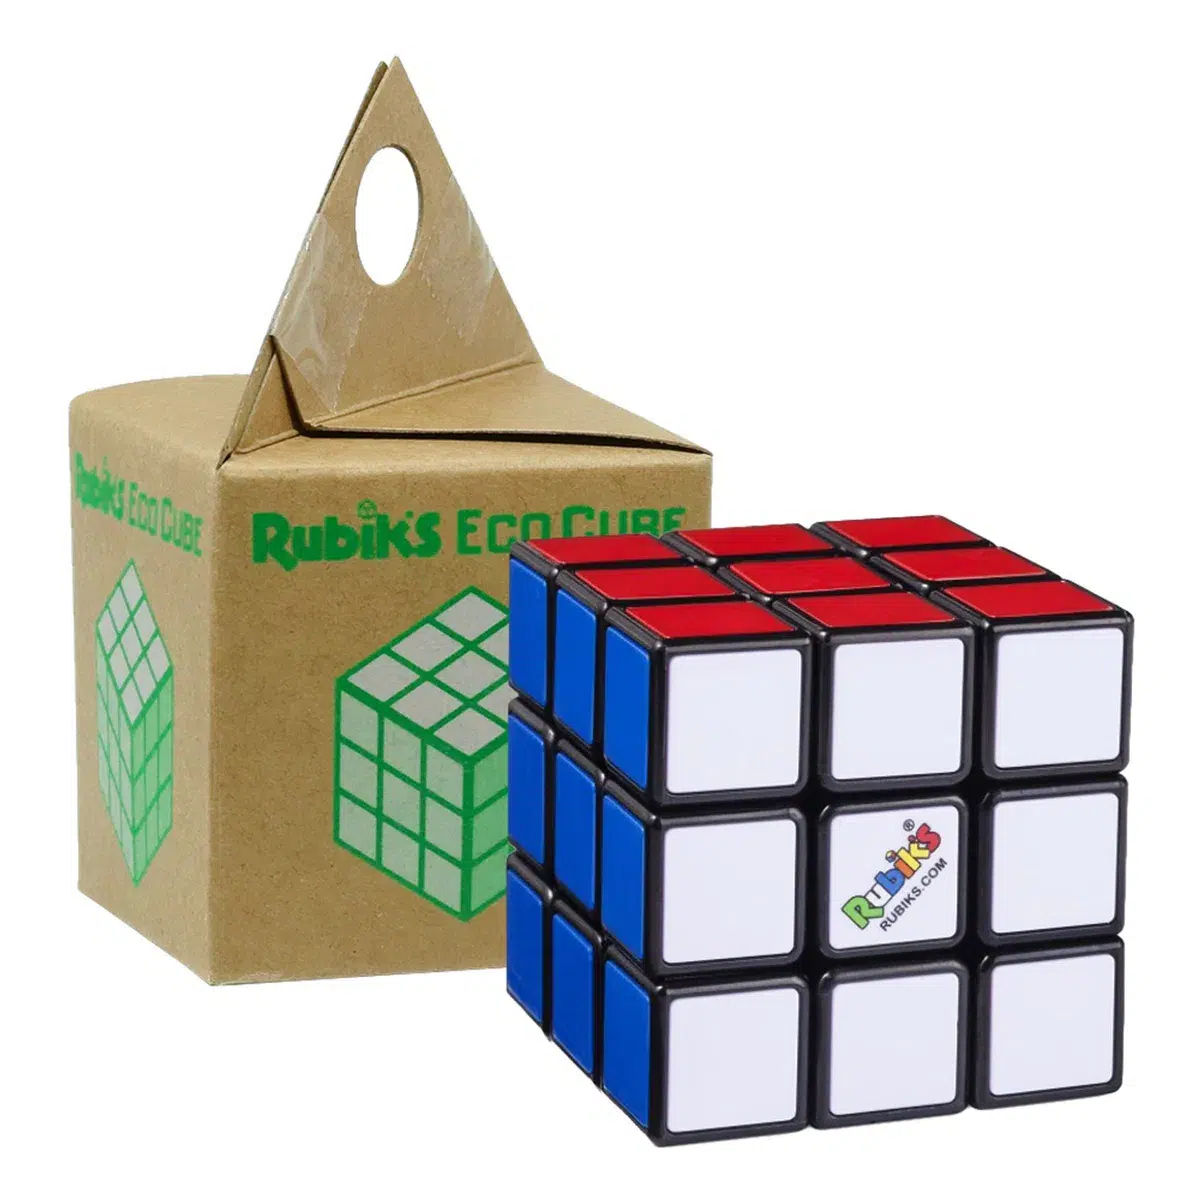 Original Rubik's Cube in umweltfreundlicher Verpackung